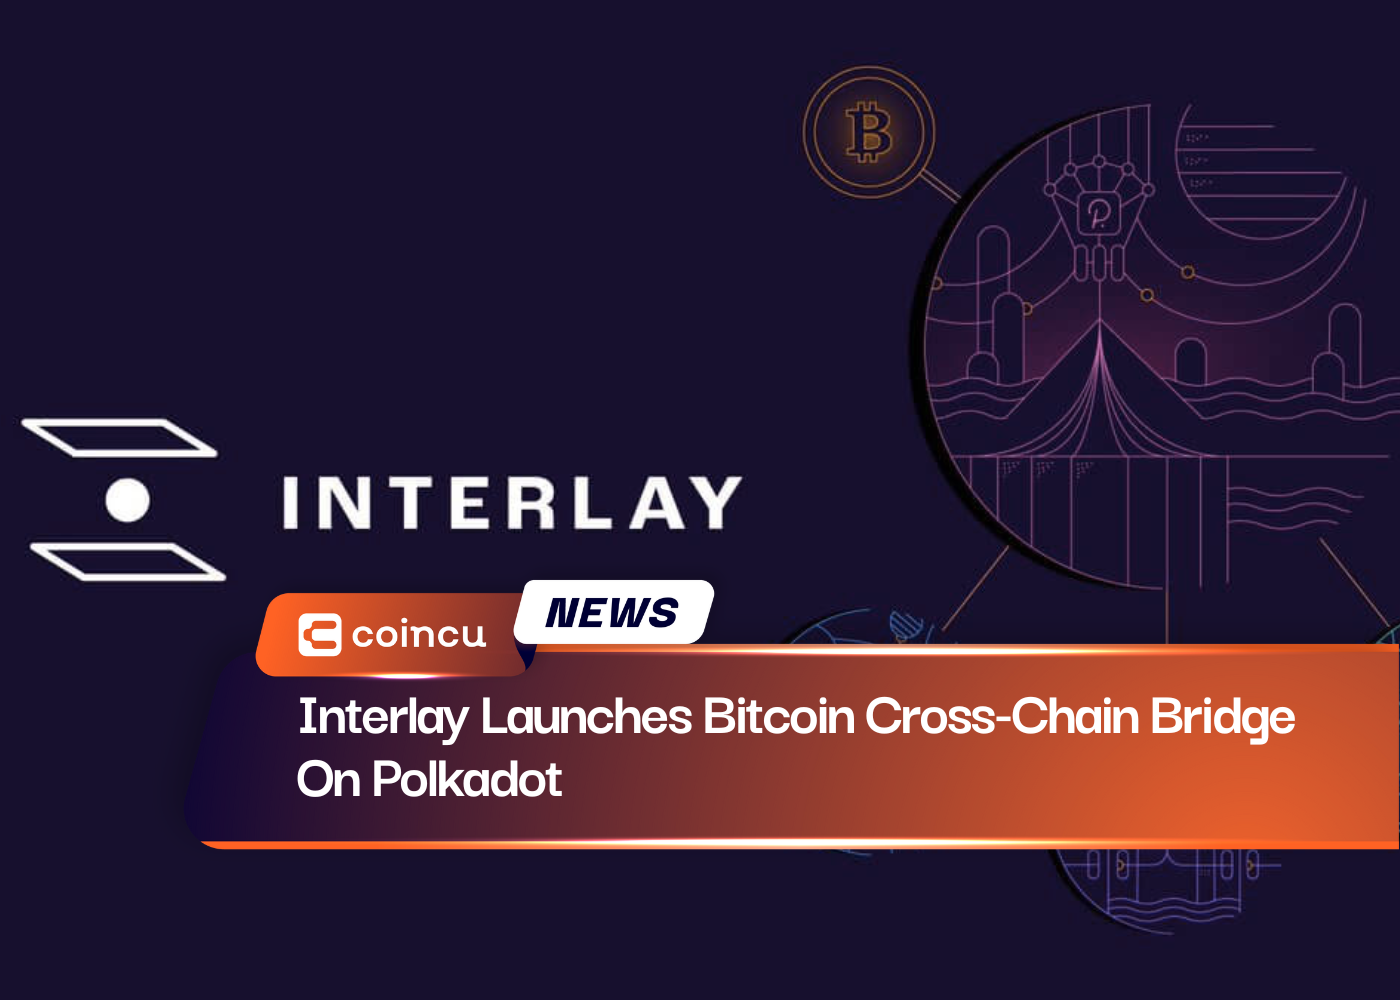 InterlayがPolkadotでビットコインクロスチェーンブリッジを開始